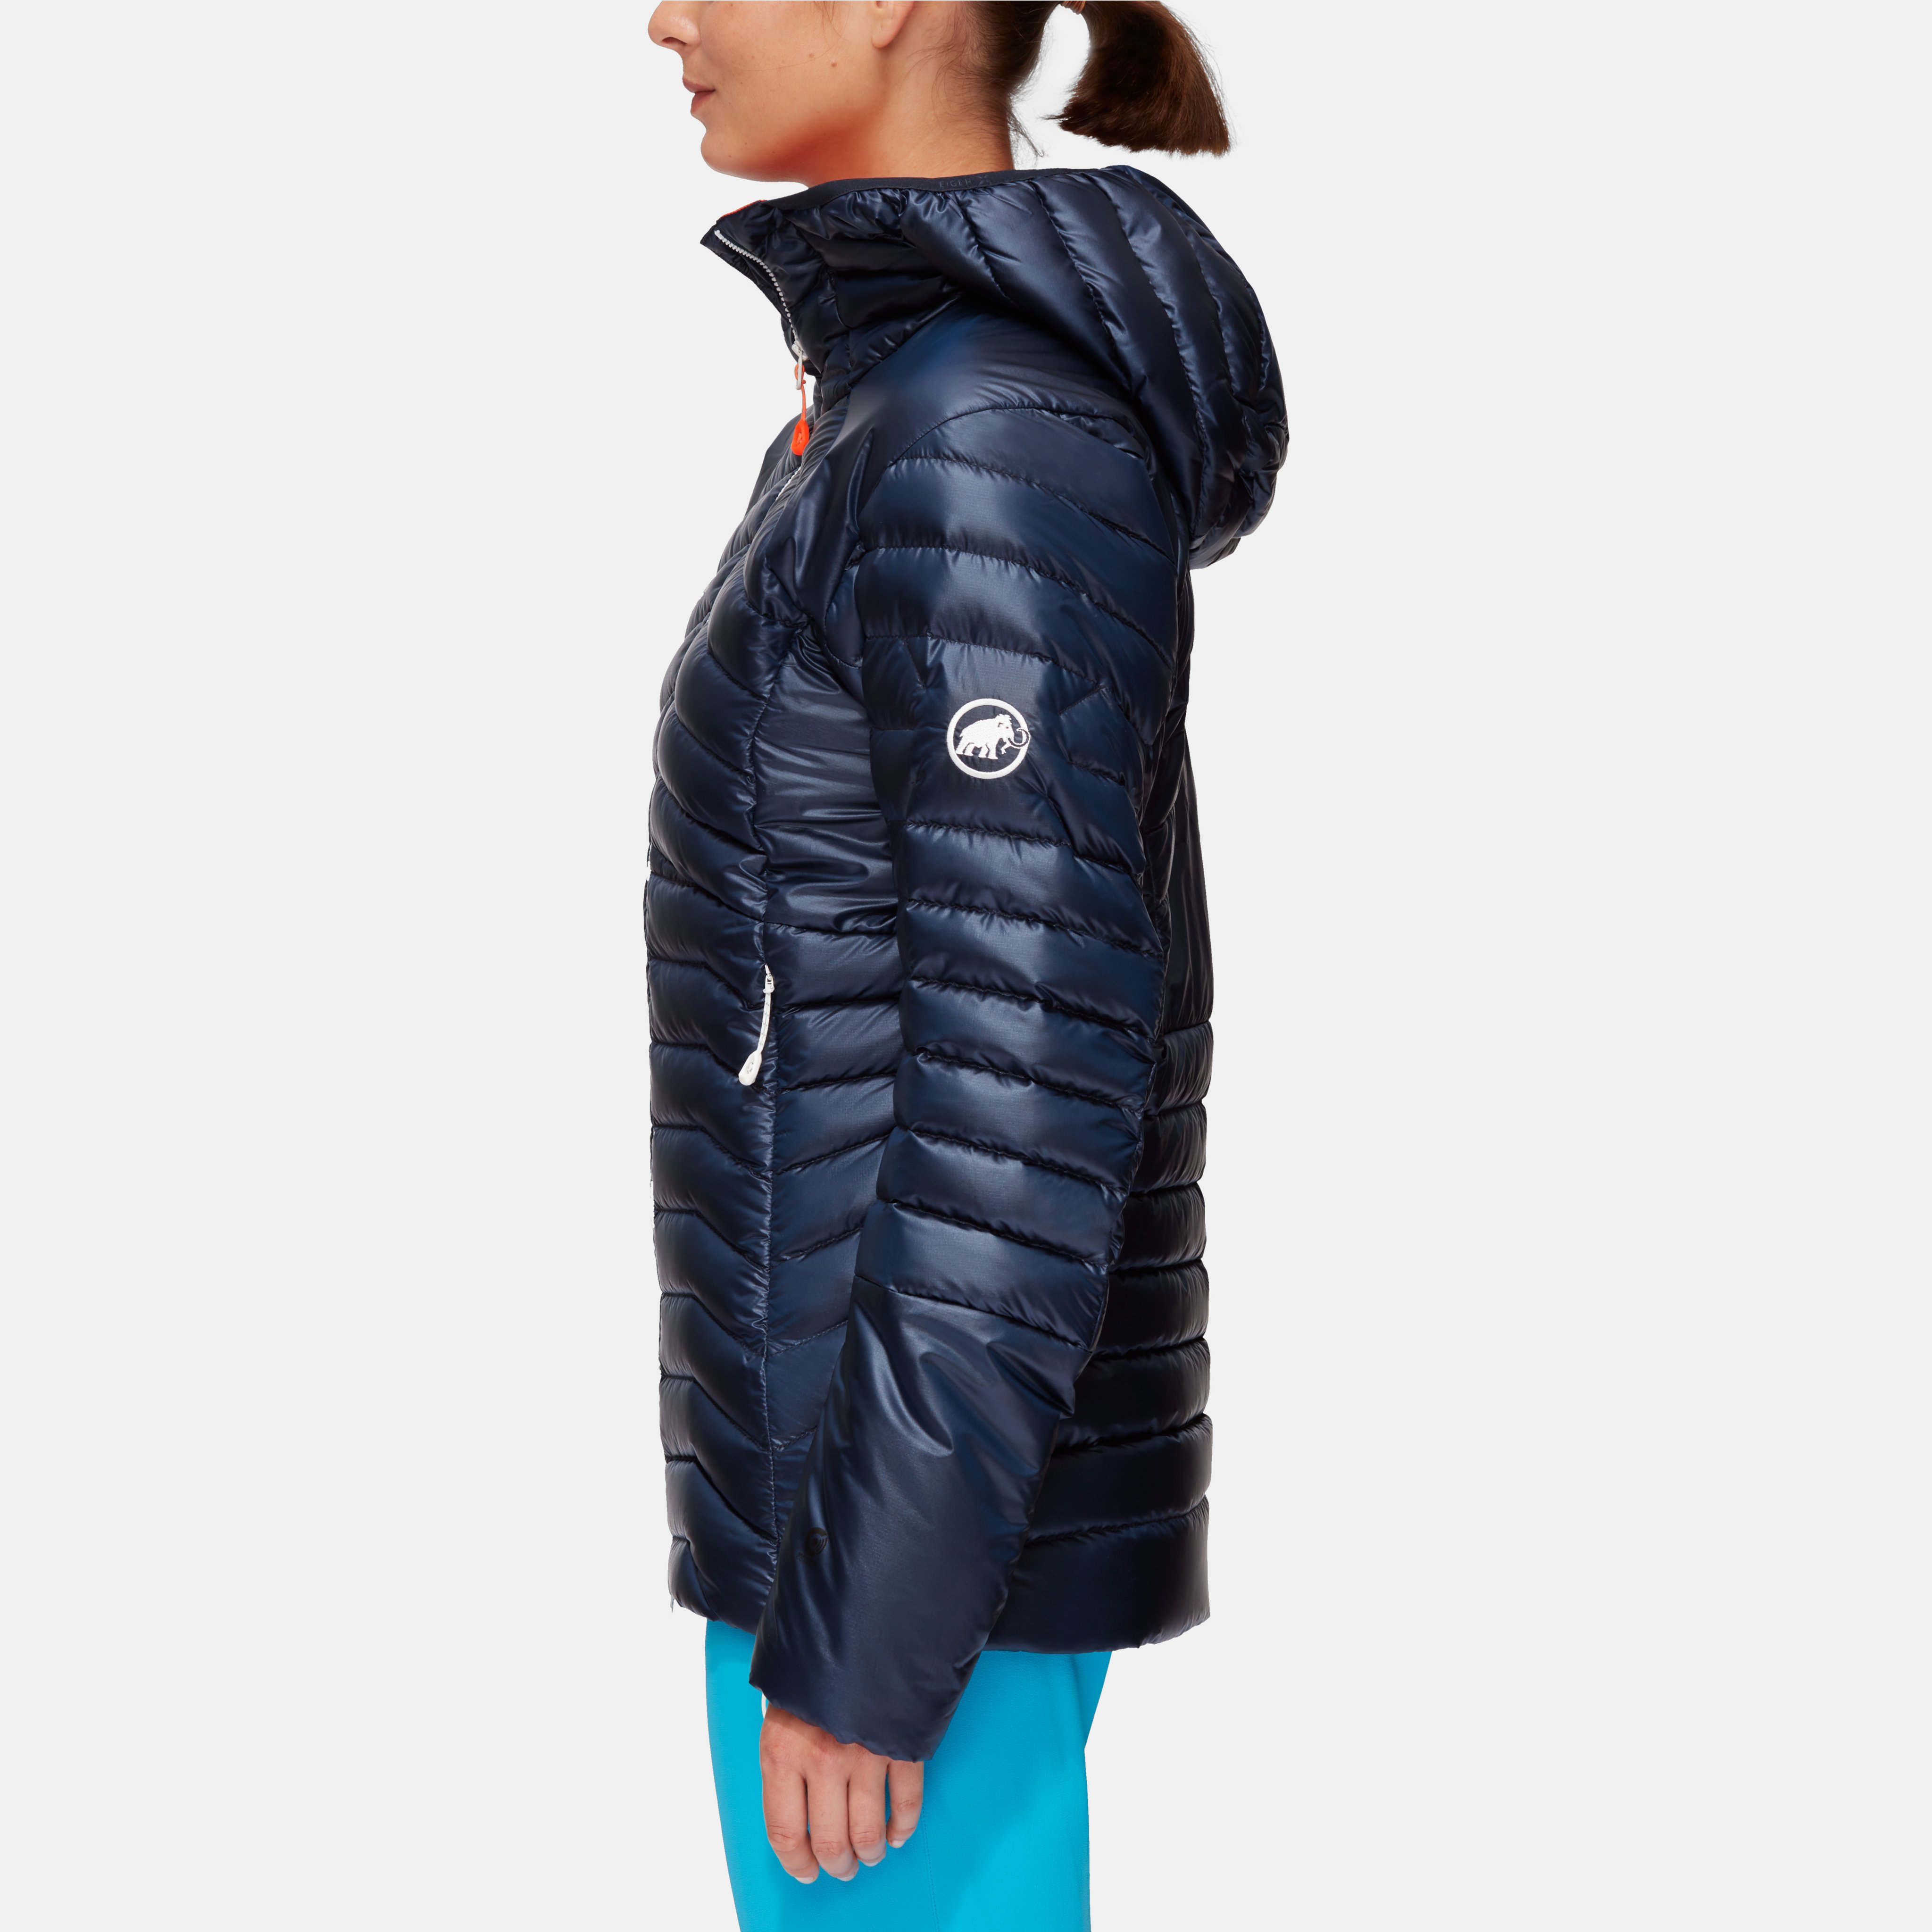 Eigerjoch Advanced IN Hooded Jacket Women product image